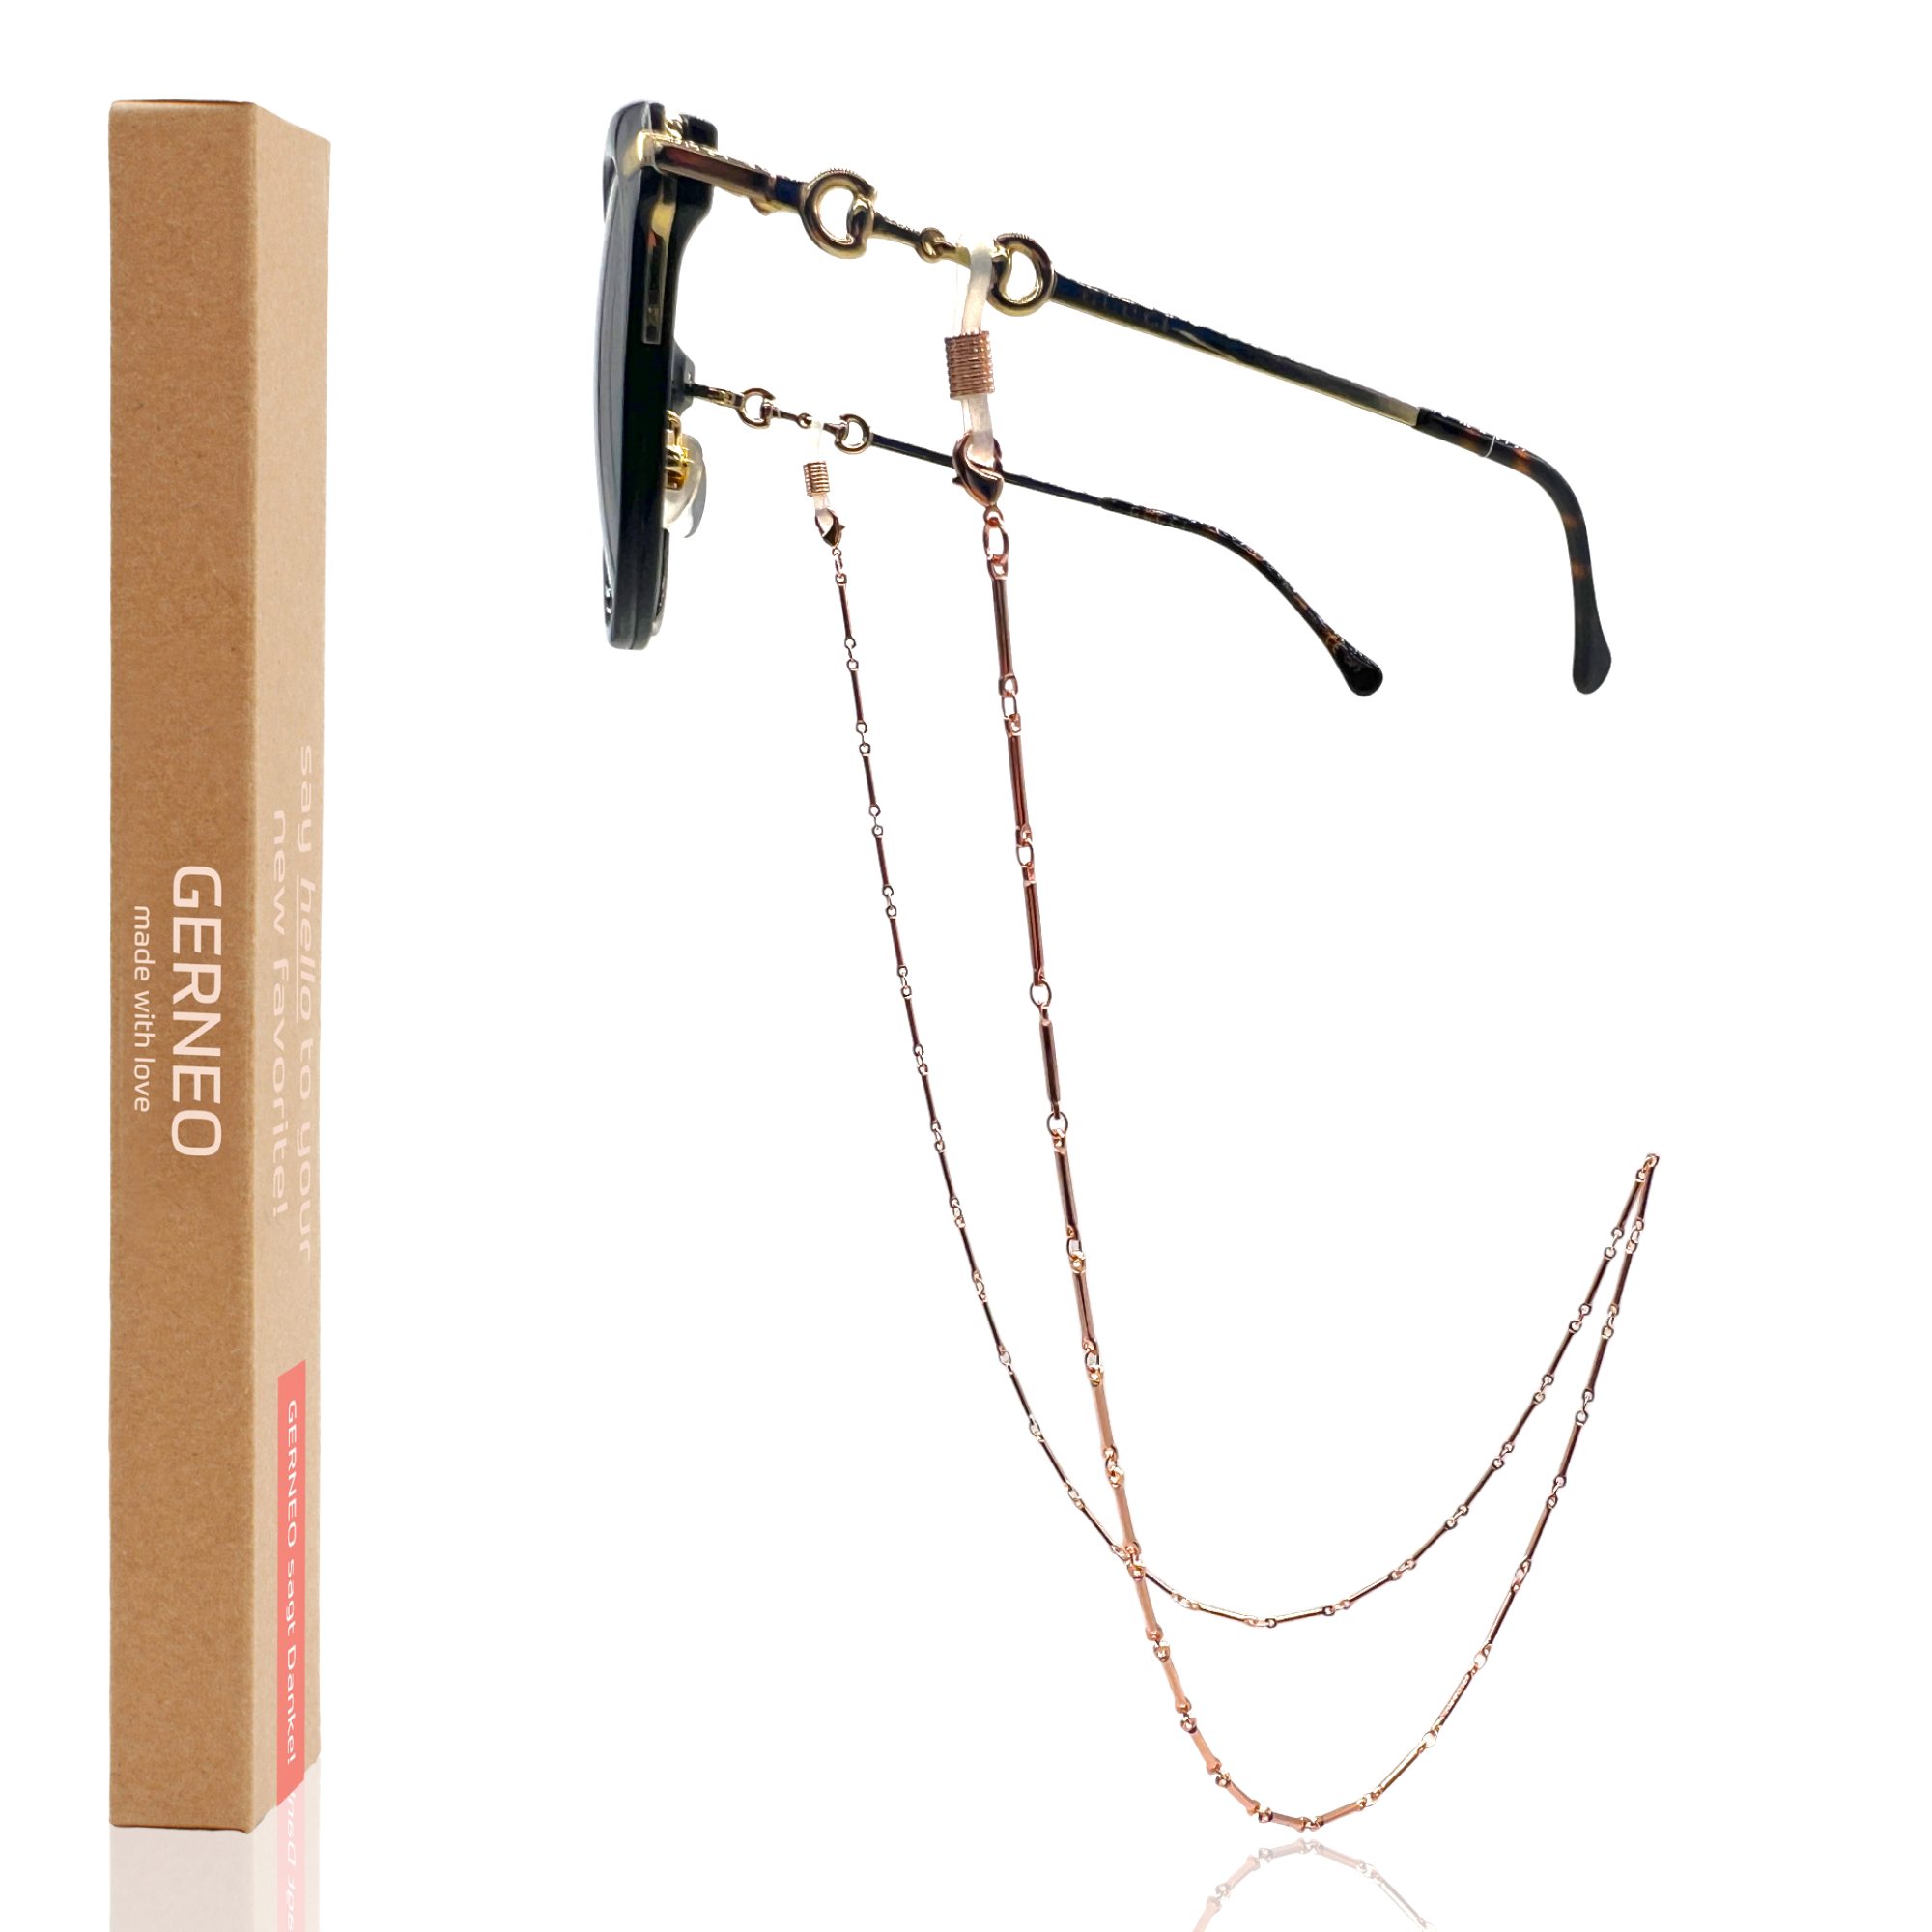 hochwertige versilbert oder Brillenkette GERNEO – Rose vergoldet & Brillenkette Maskenhalter, Phuket einzigartig GERNEO® – – korrosionsbeständige Brillenkette